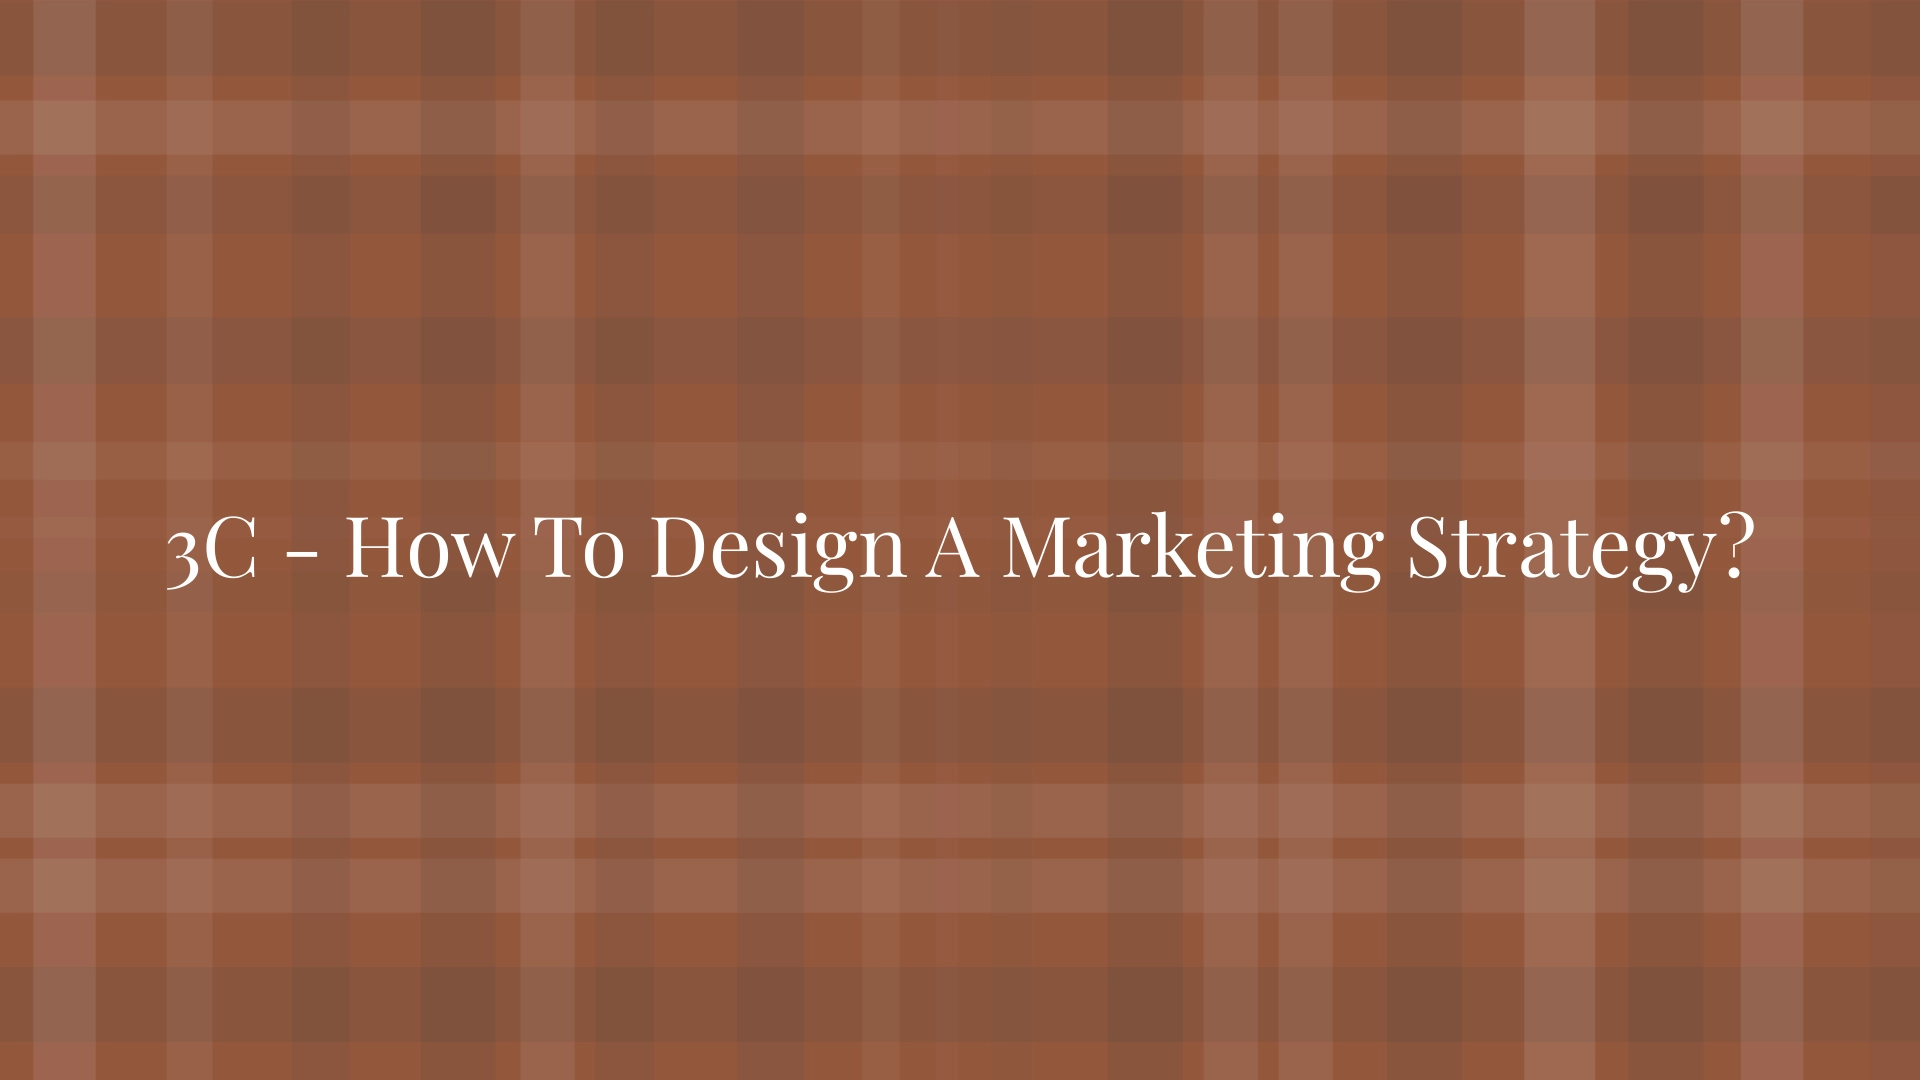 ¿Cómo diseñar una estrategia de marketing?